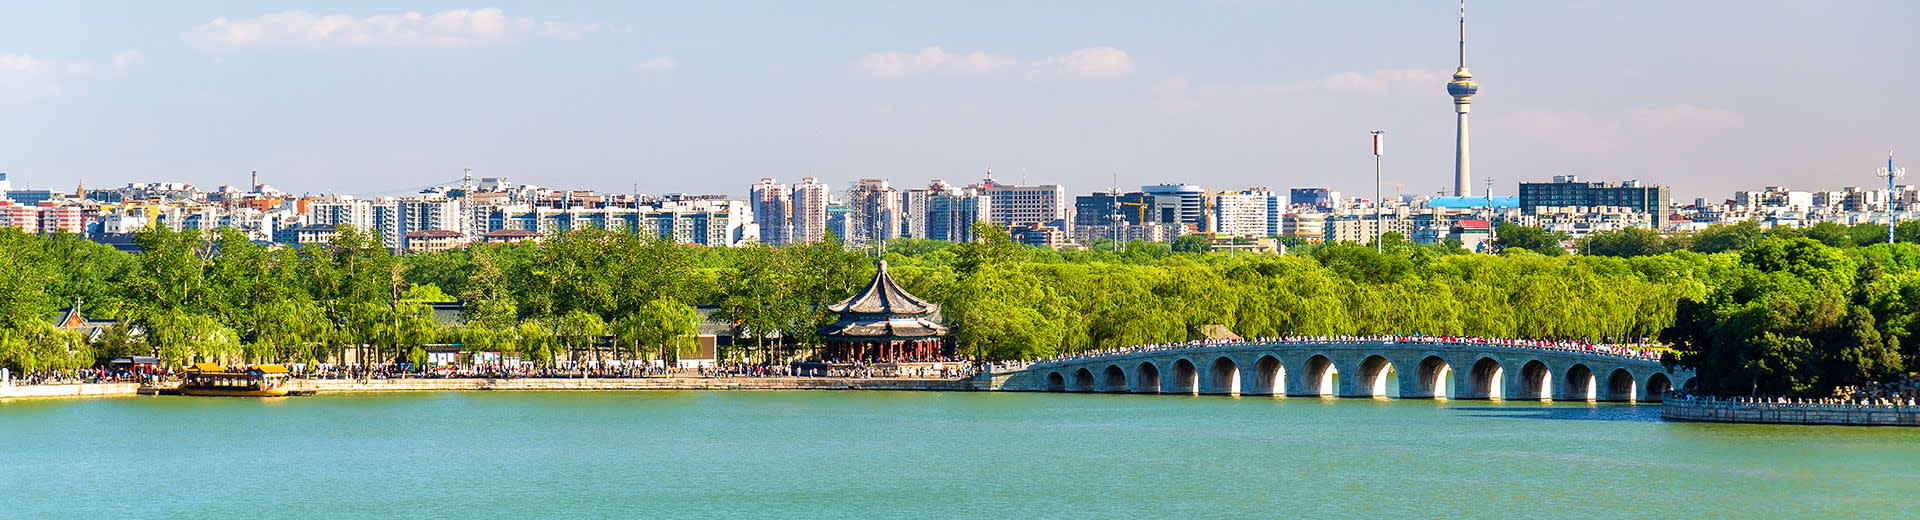 La belle eau bleue passe sous un pont, avec l'horizon de Kunming qui se profile en arrière-plan.